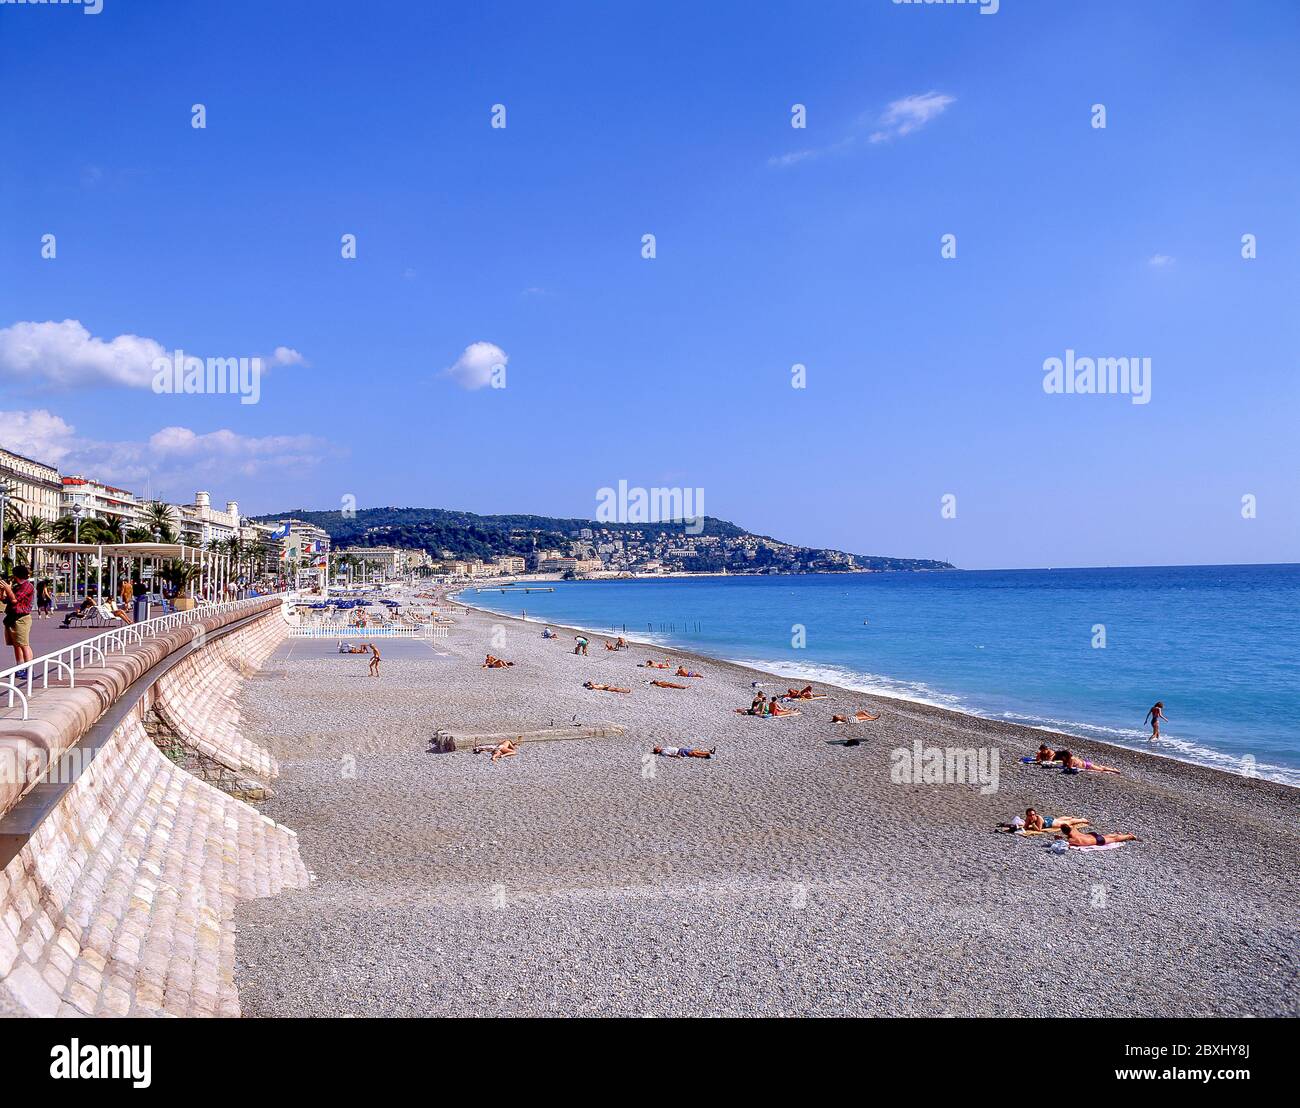 Plage Publique (public beach), Nice, Côte d'Azur, Alpes-Maritimes, Provence-Alpes-Côte d'Azur, France Stock Photo